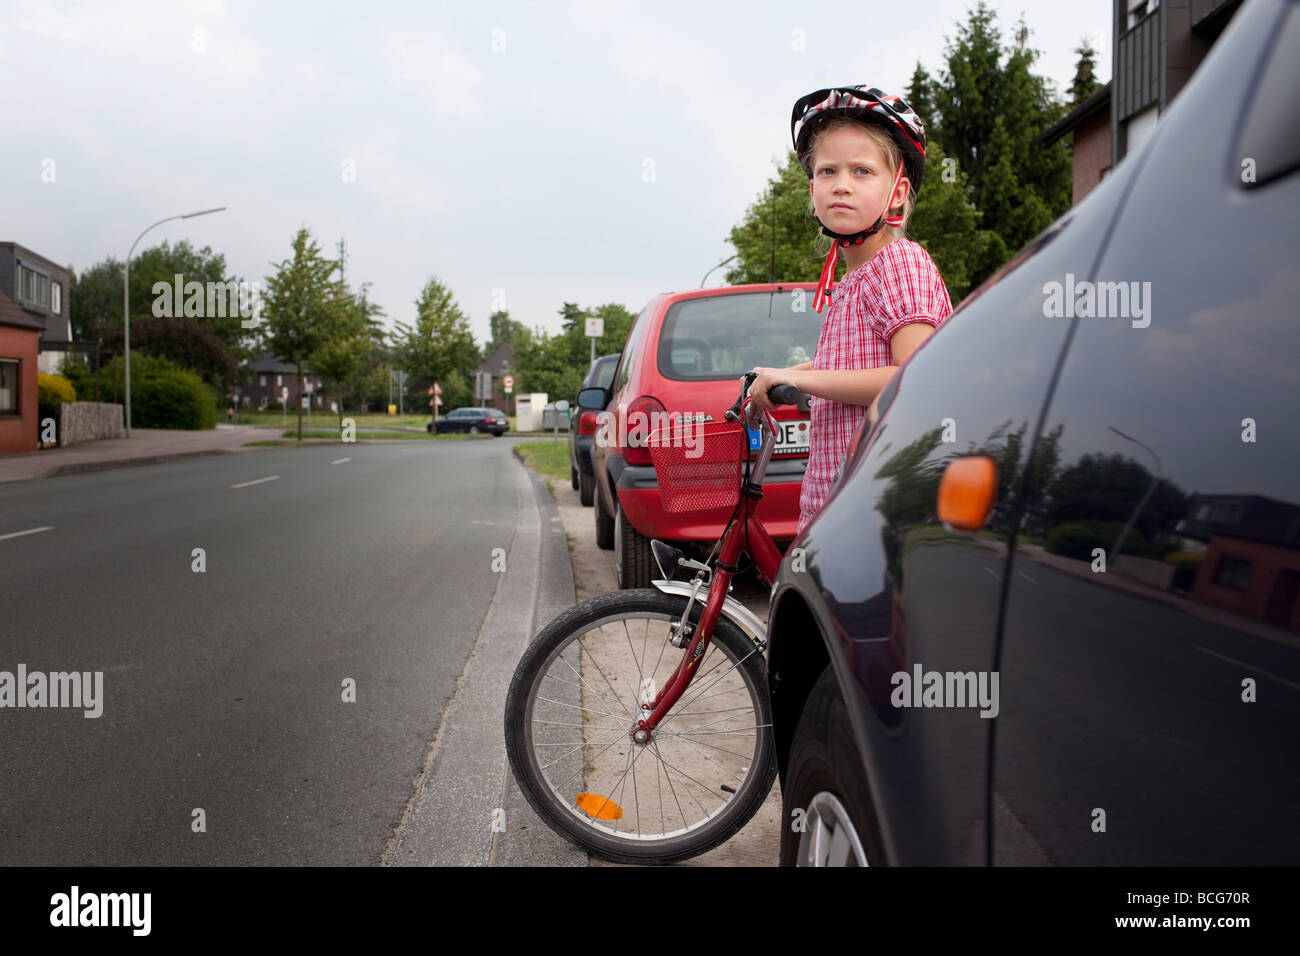 Children between cars Stock Photo